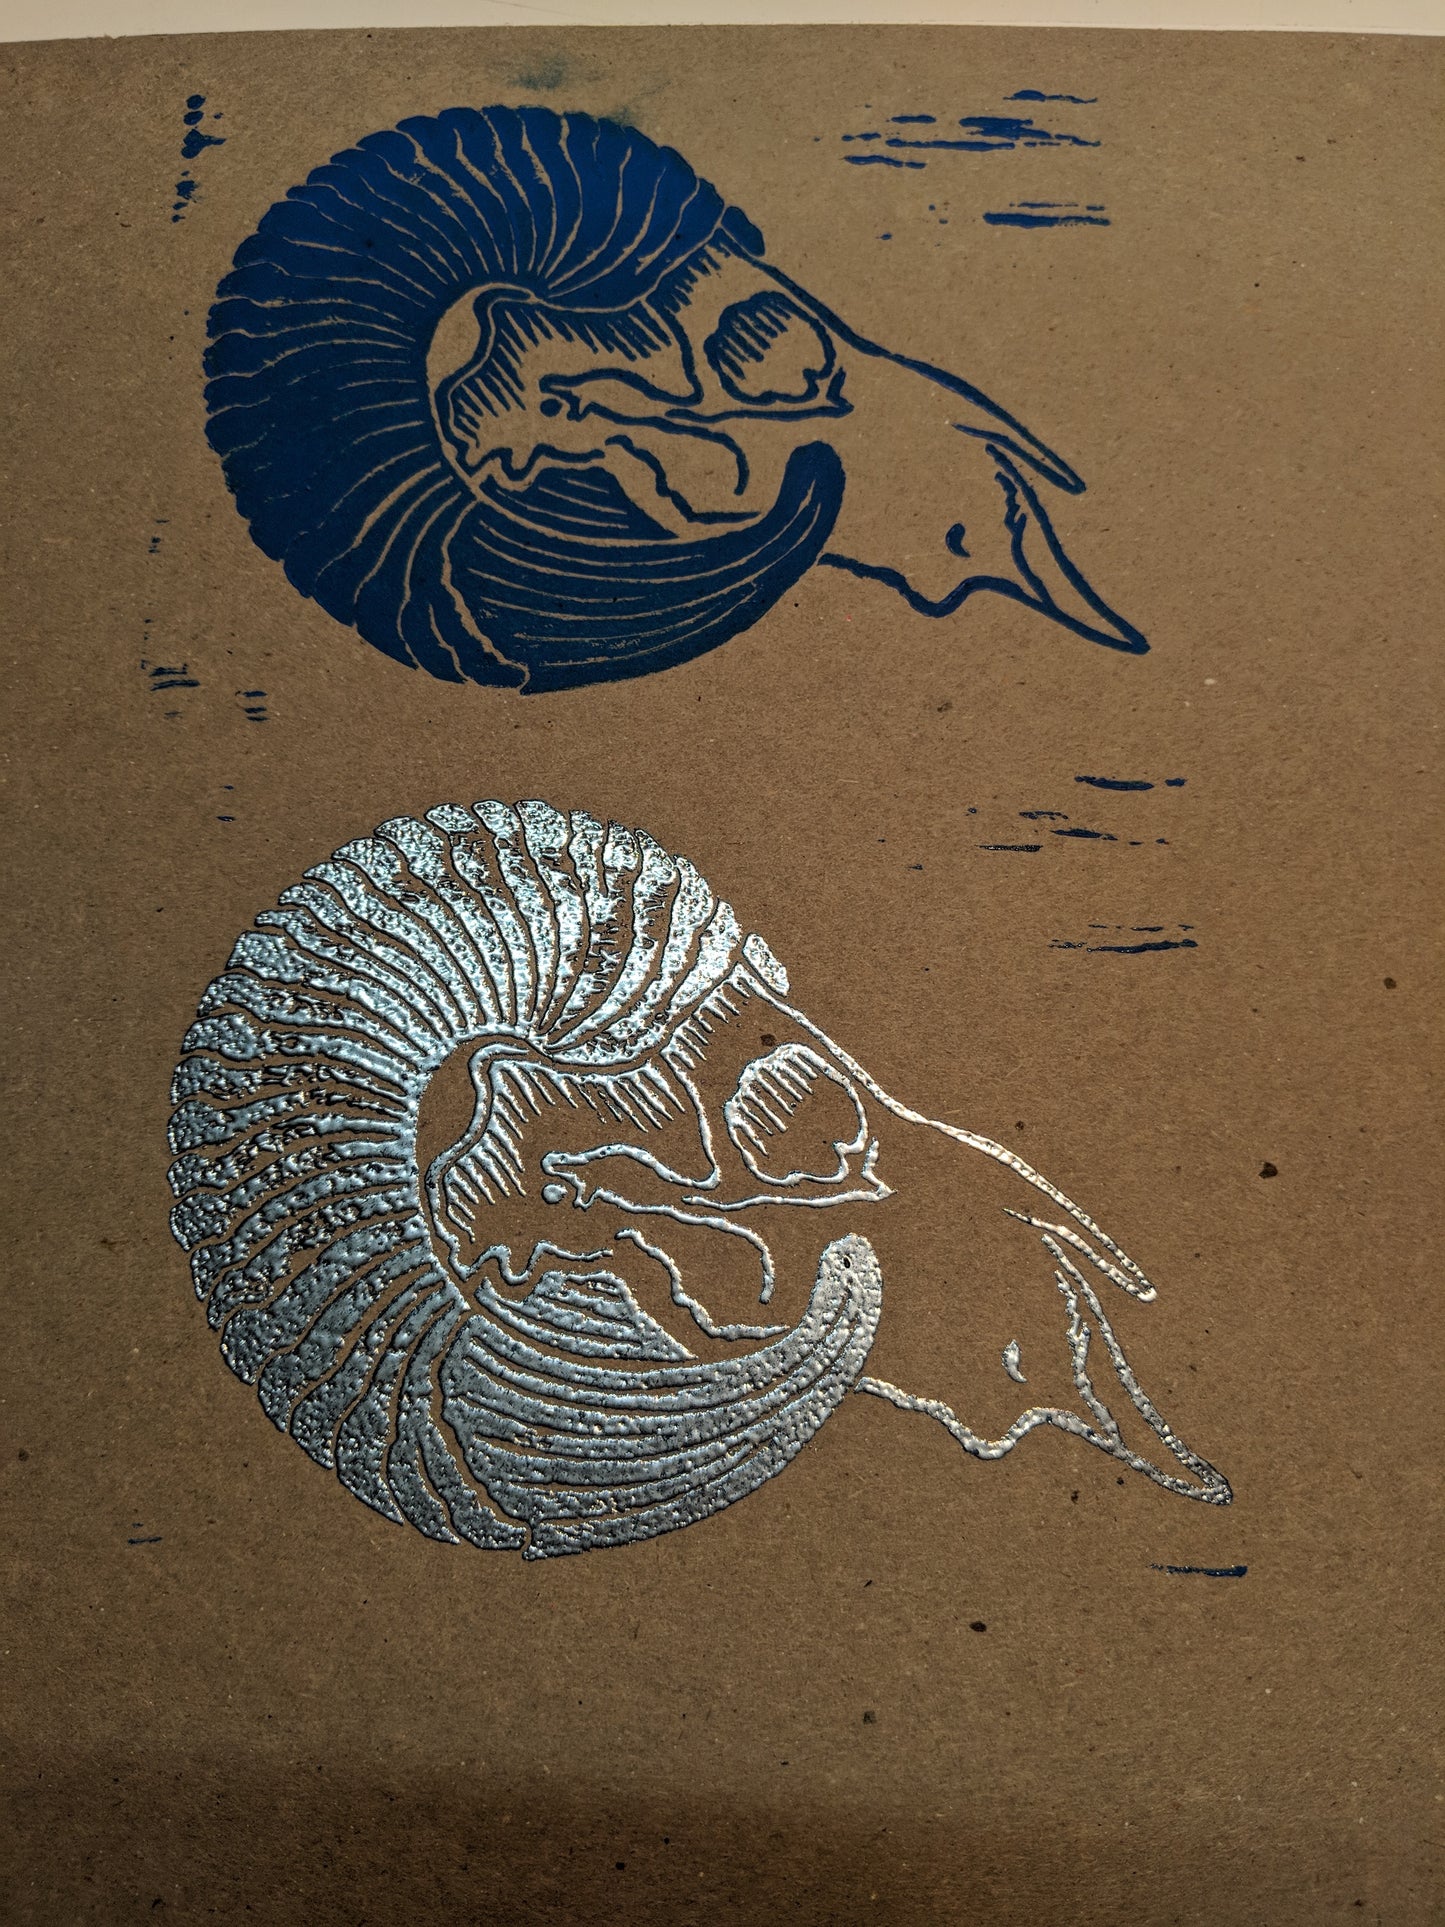 Ram Skull Lino Print Cards